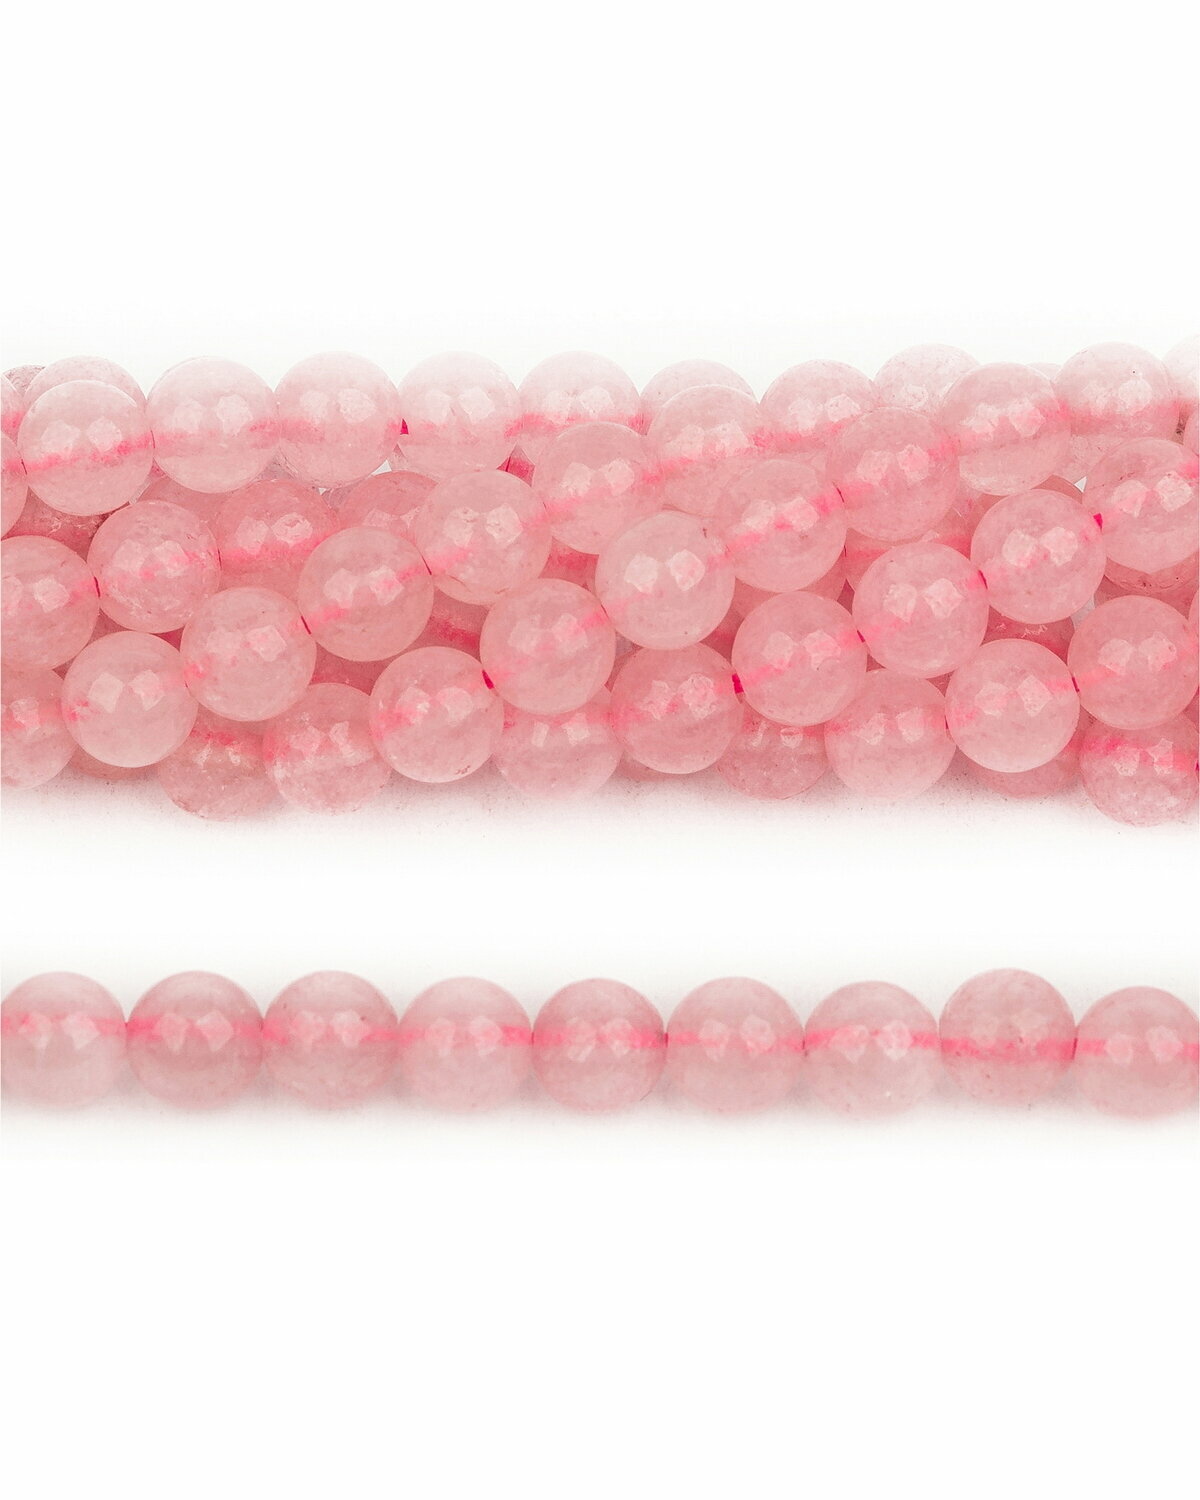 Каменные бусины из натурального камня - Кварц розовый 6 мм